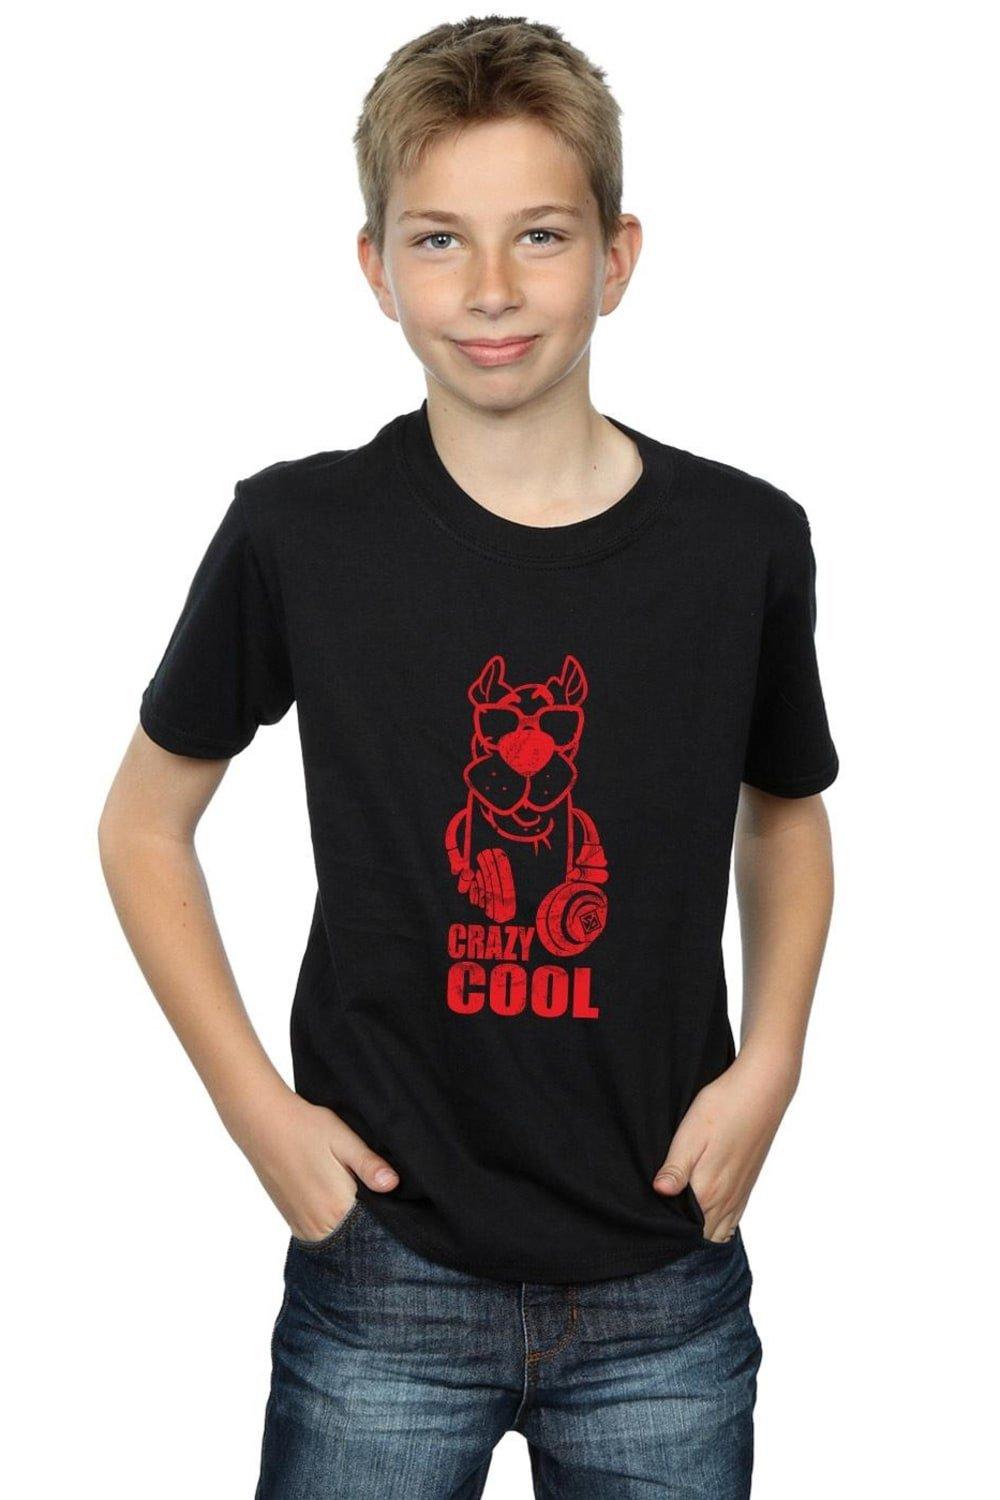 Crazy Cool T-Shirt